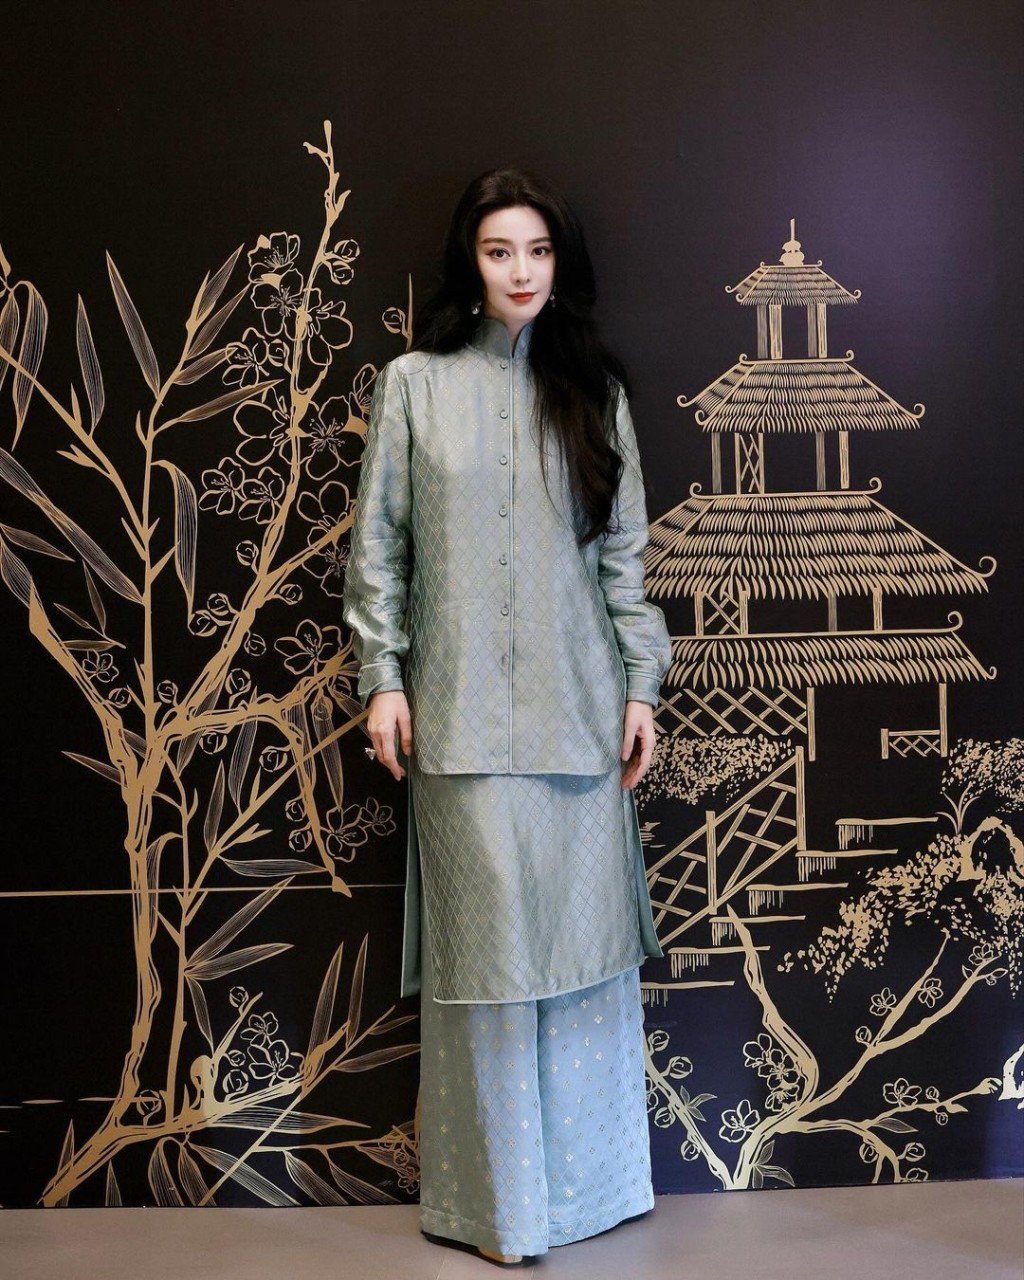 至於第三套由中國設計師品牌M ESSENTIAL最新系列的滄浪緹花新中式套裝終於獲得網民大讚。